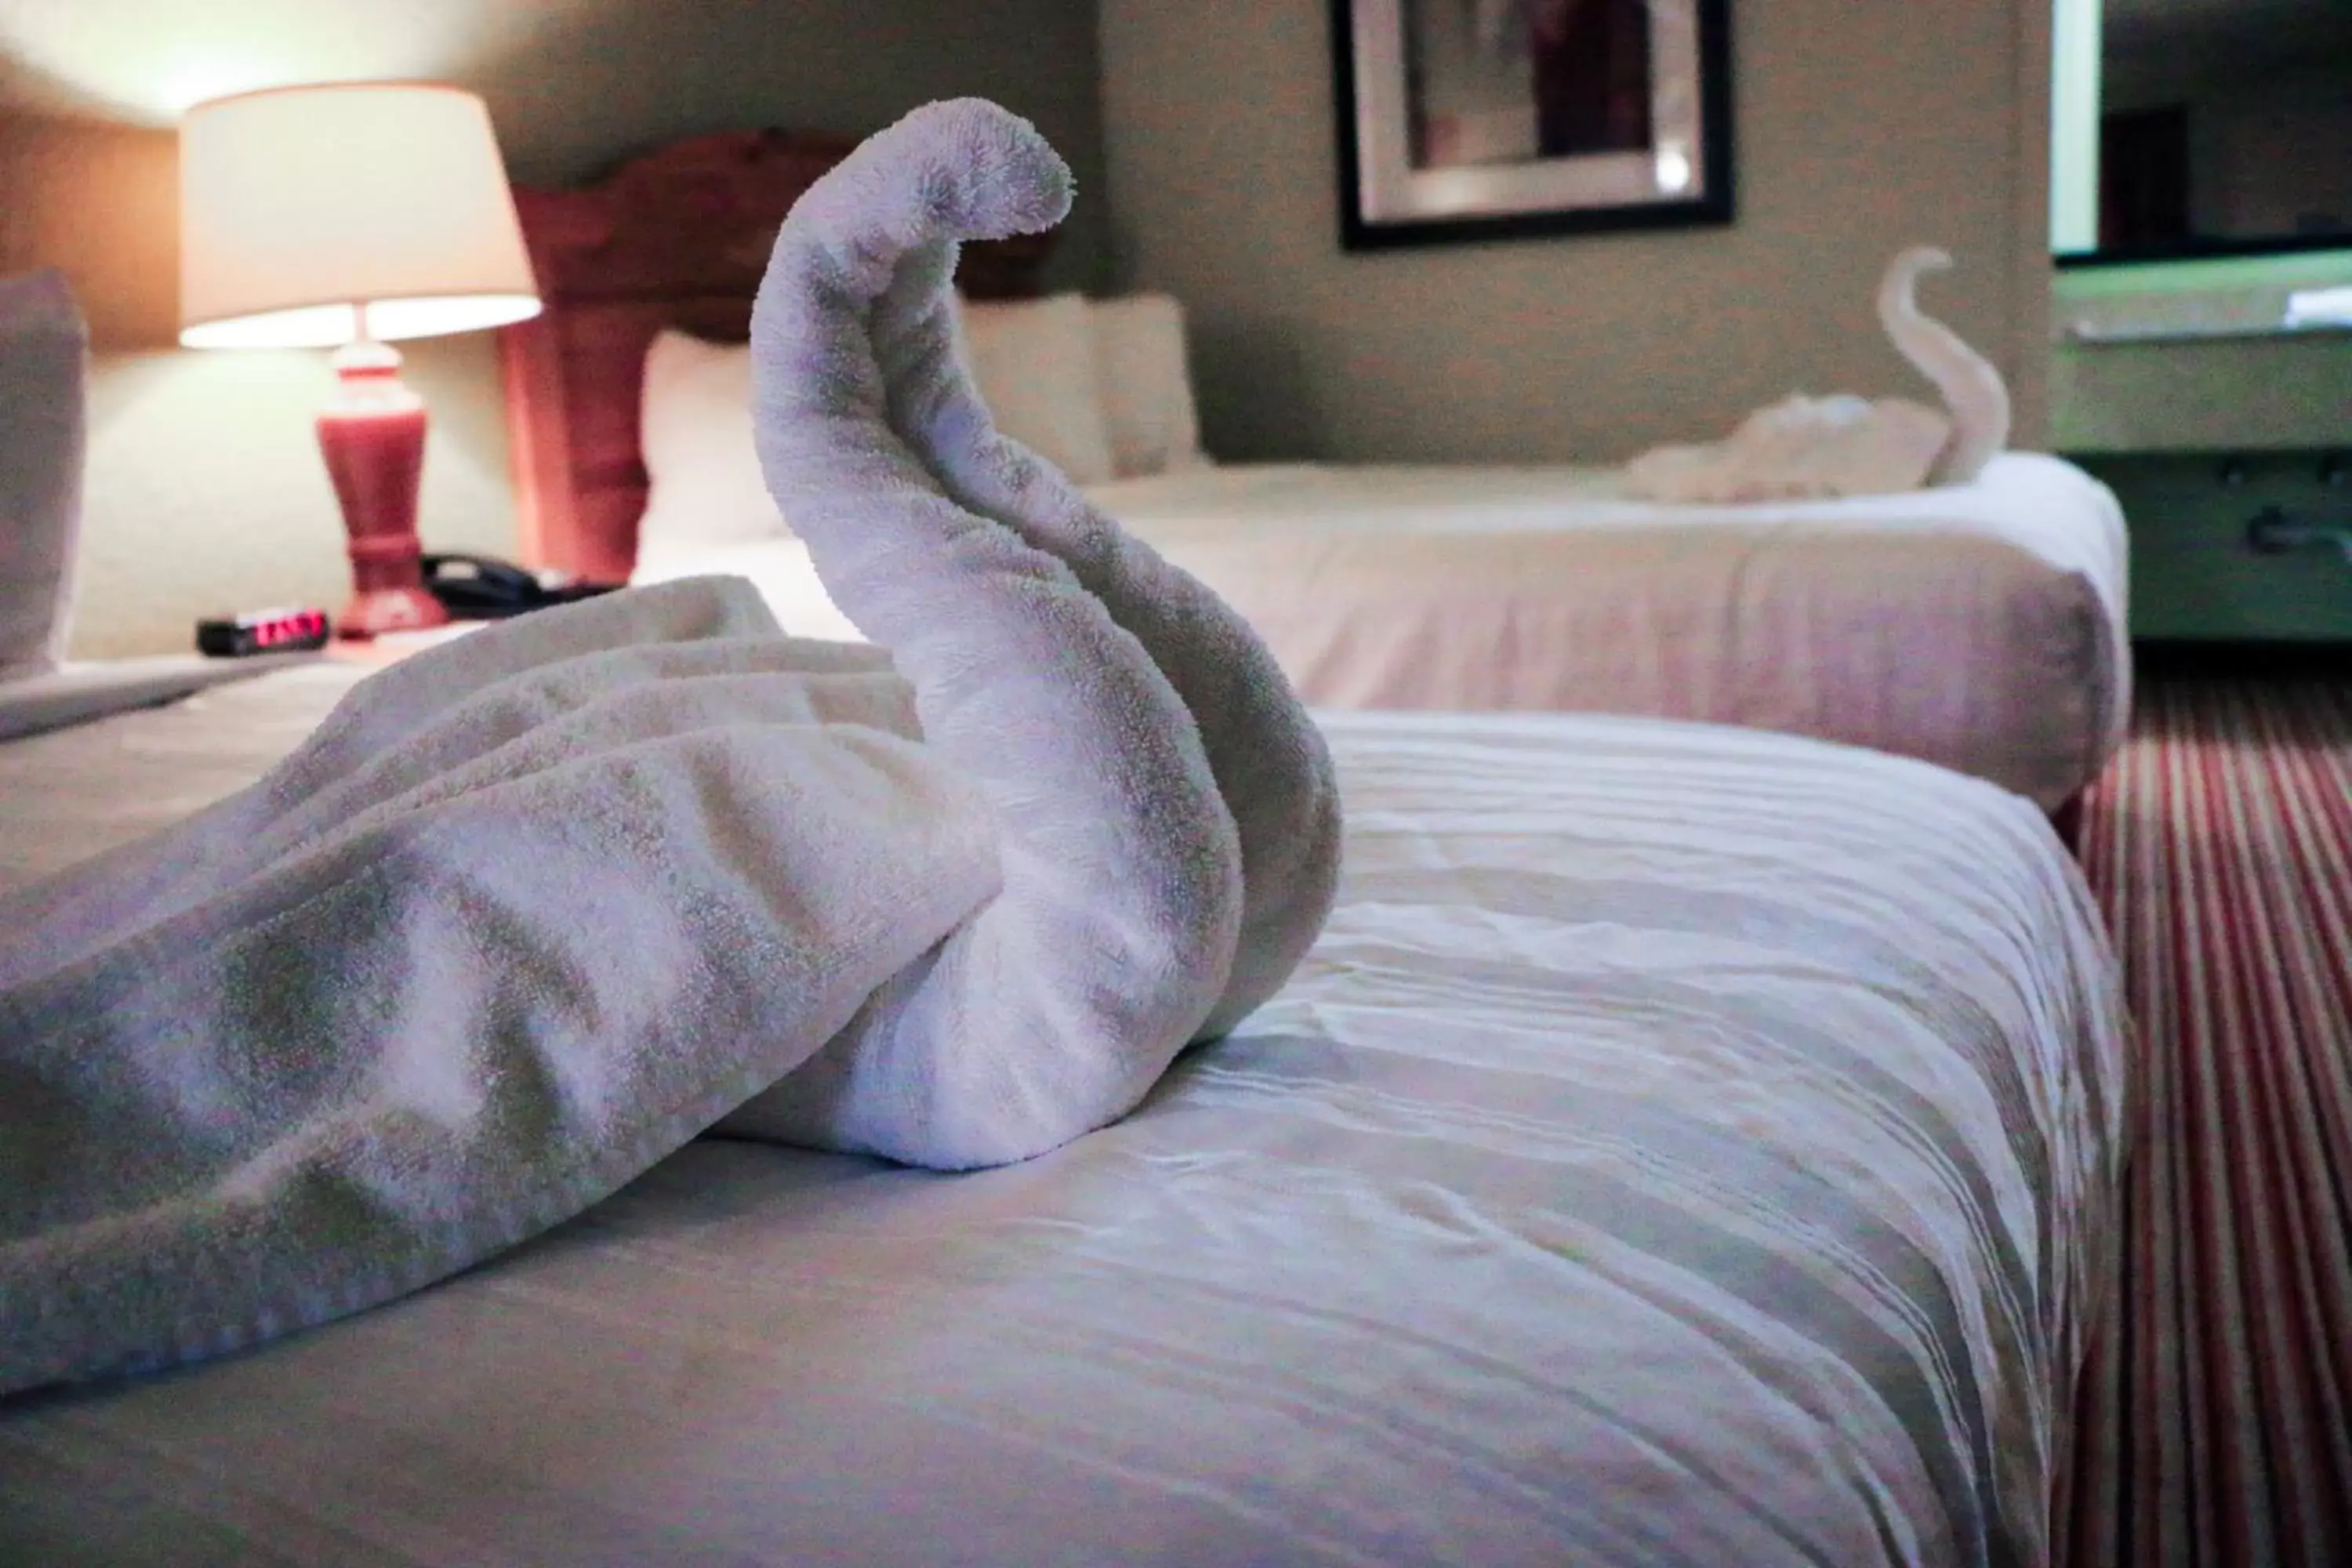 Bed in Suite Dreams Hotel